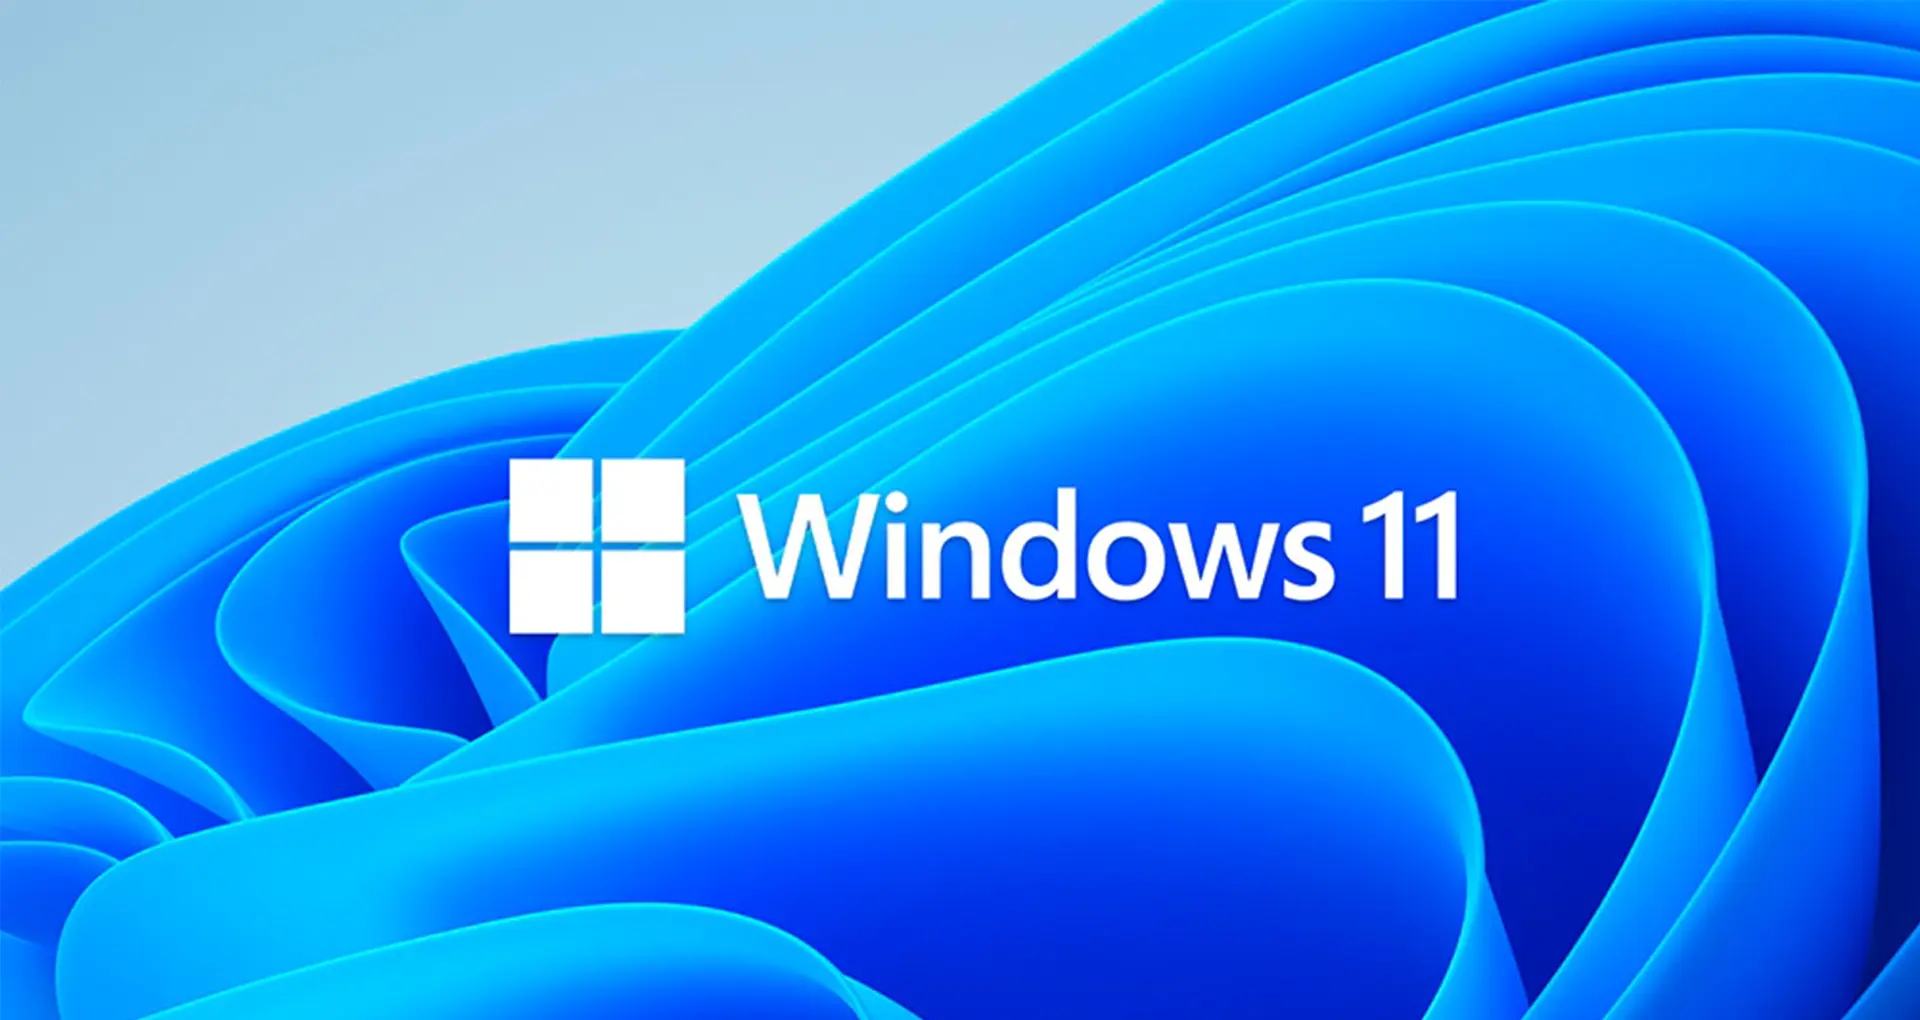 Cenesco | Windows 11 Umstellung für Unternehmen